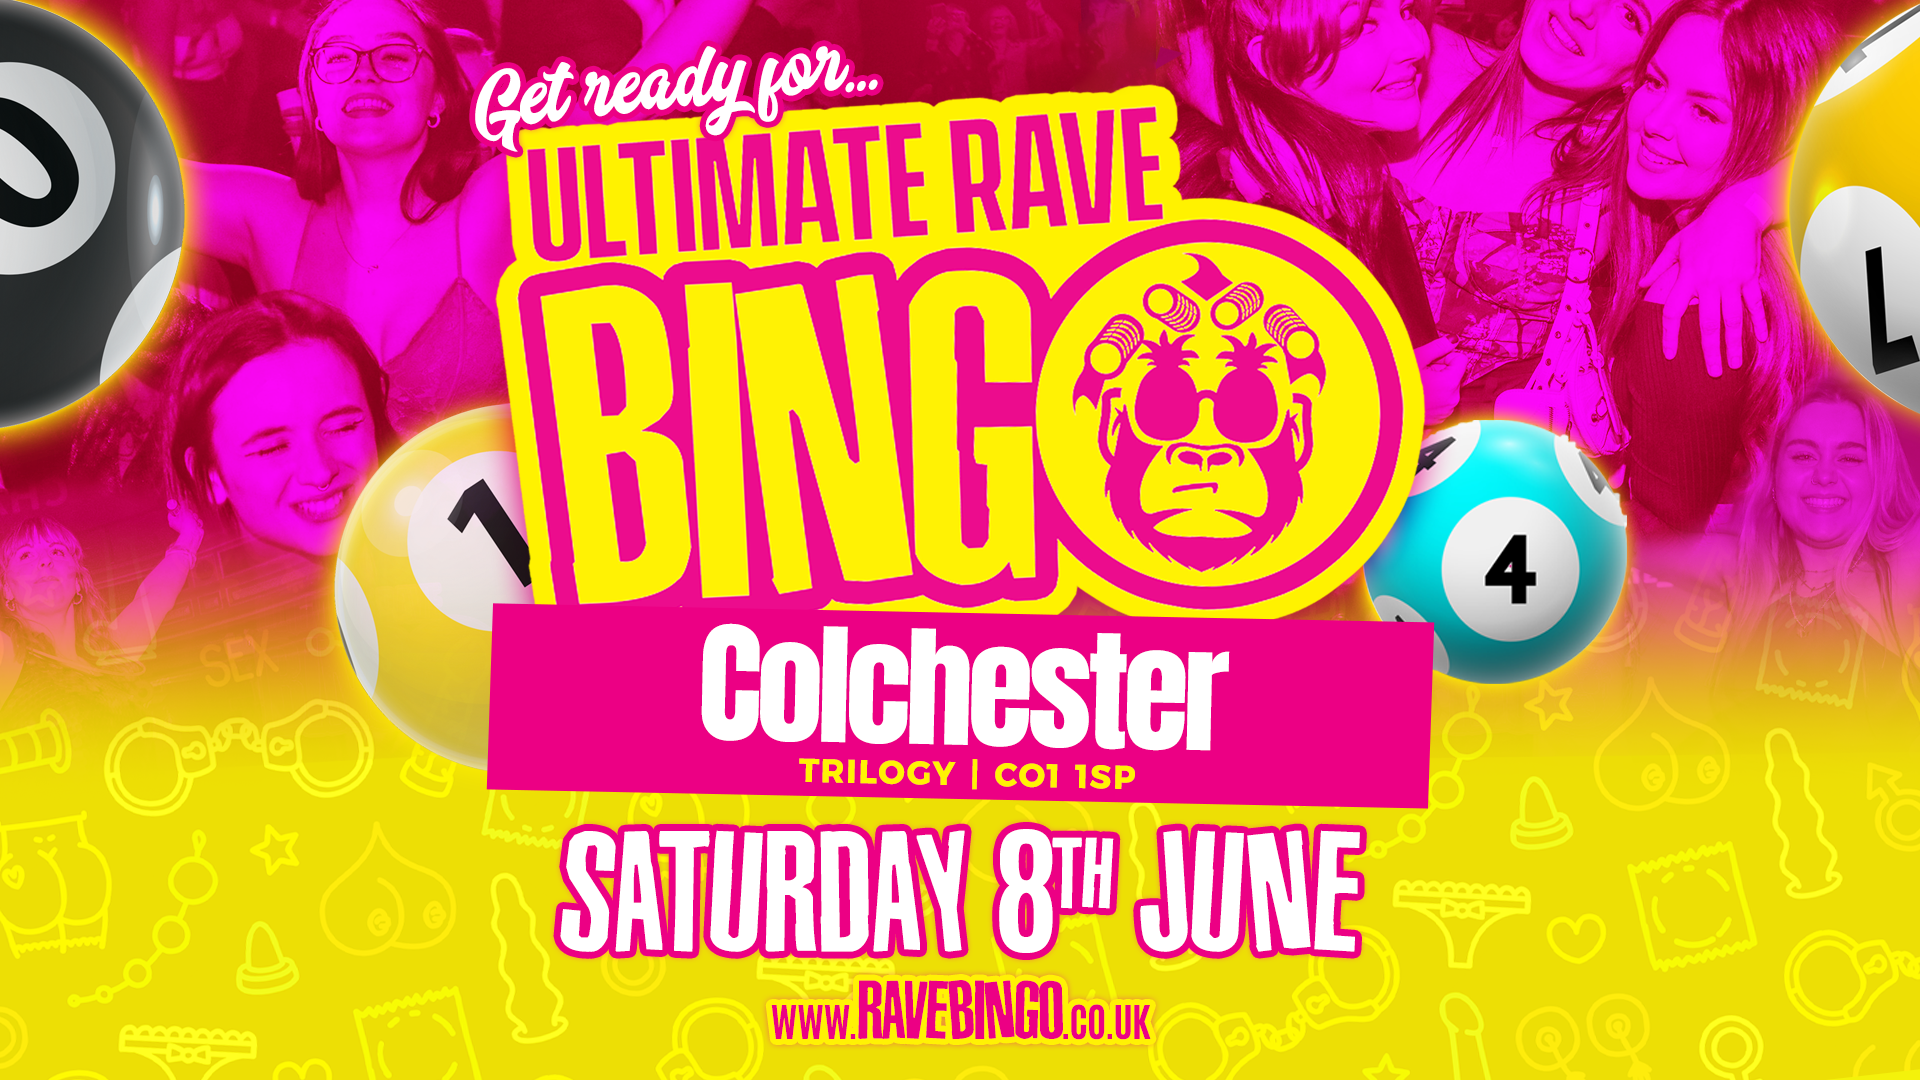 Ultimate Rave Bingo // Colchester // Saturday 8th June